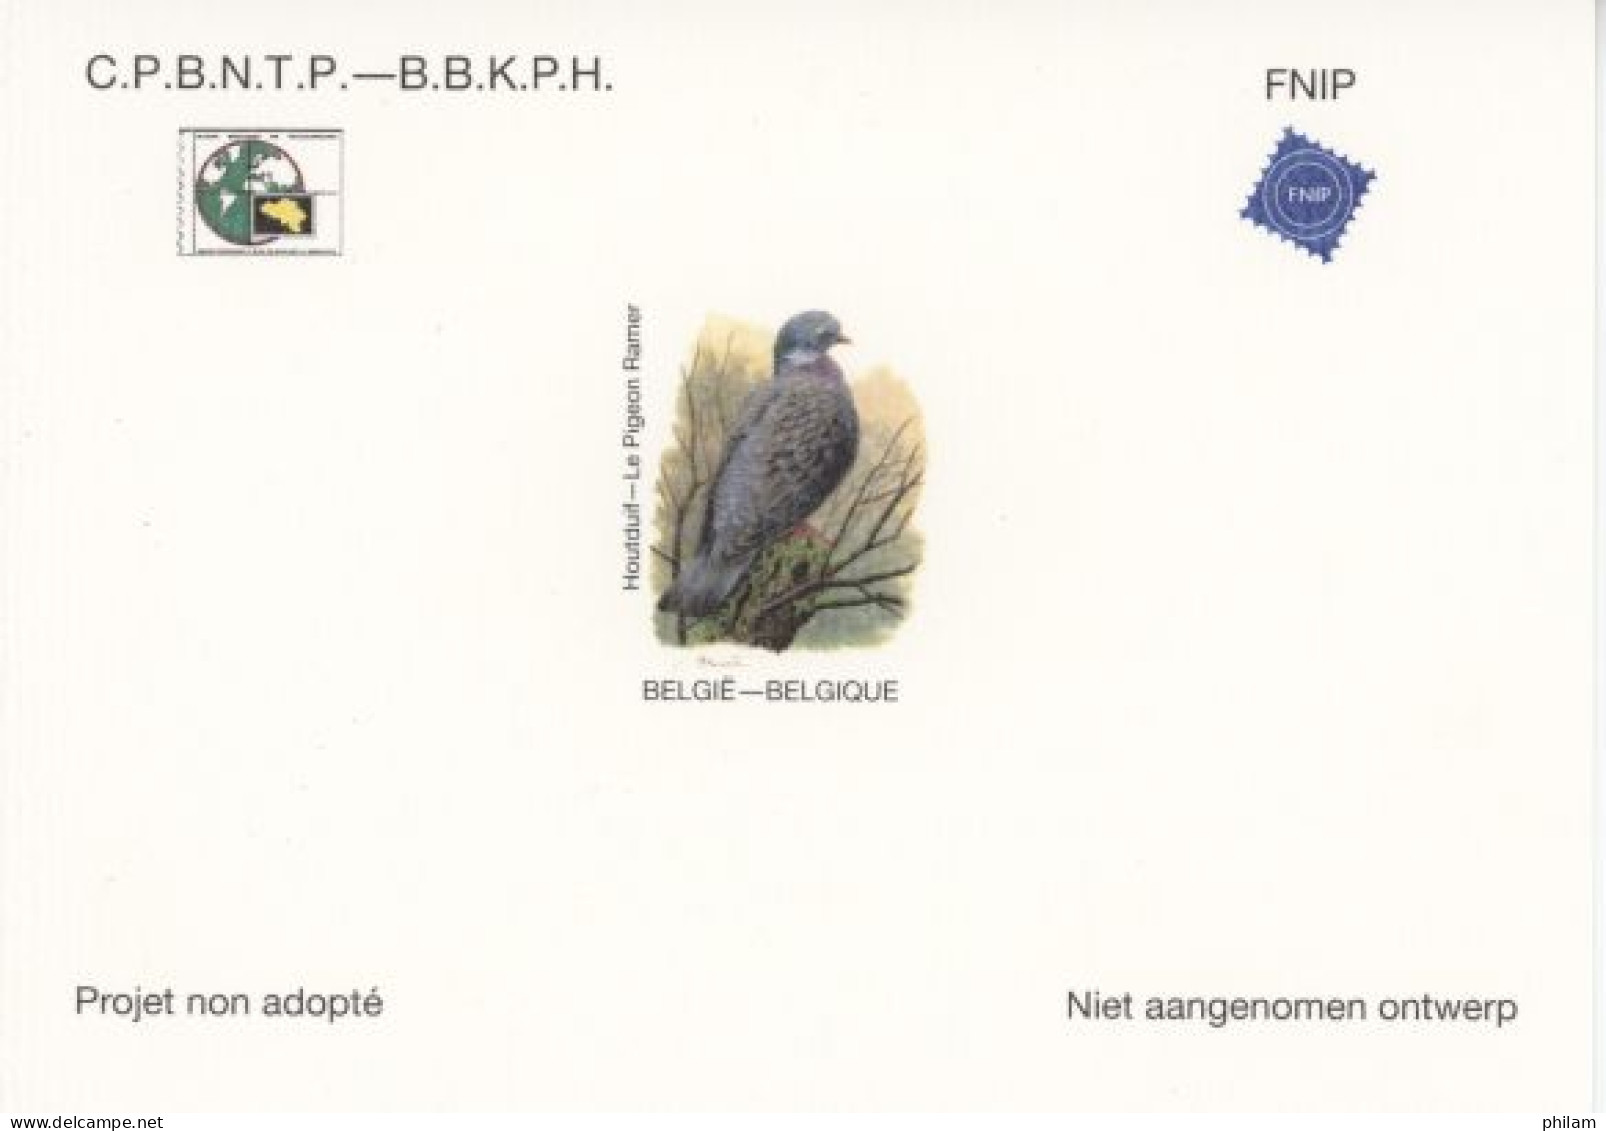 BELGIQUE 2022 - NA 44 LUXE - Pigeon Ramer Par A. Buzin - Cartonné  - Niet-aangenomen Ontwerpen [NA]